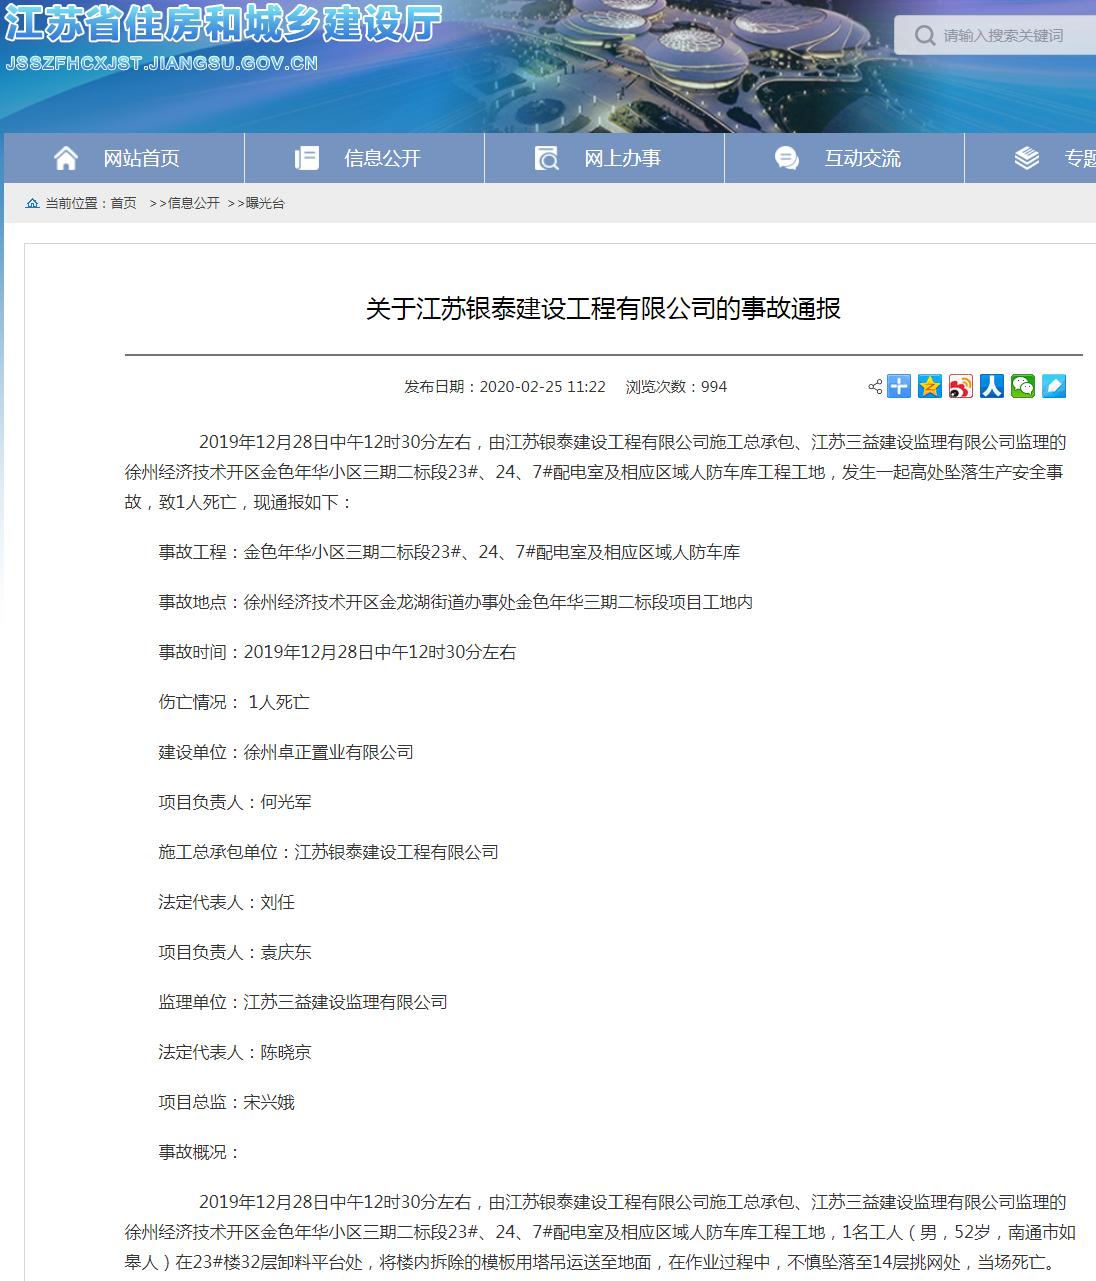 江苏银泰建设工程有限公司徐州经开区金色年华小区发生事故 致1人死亡